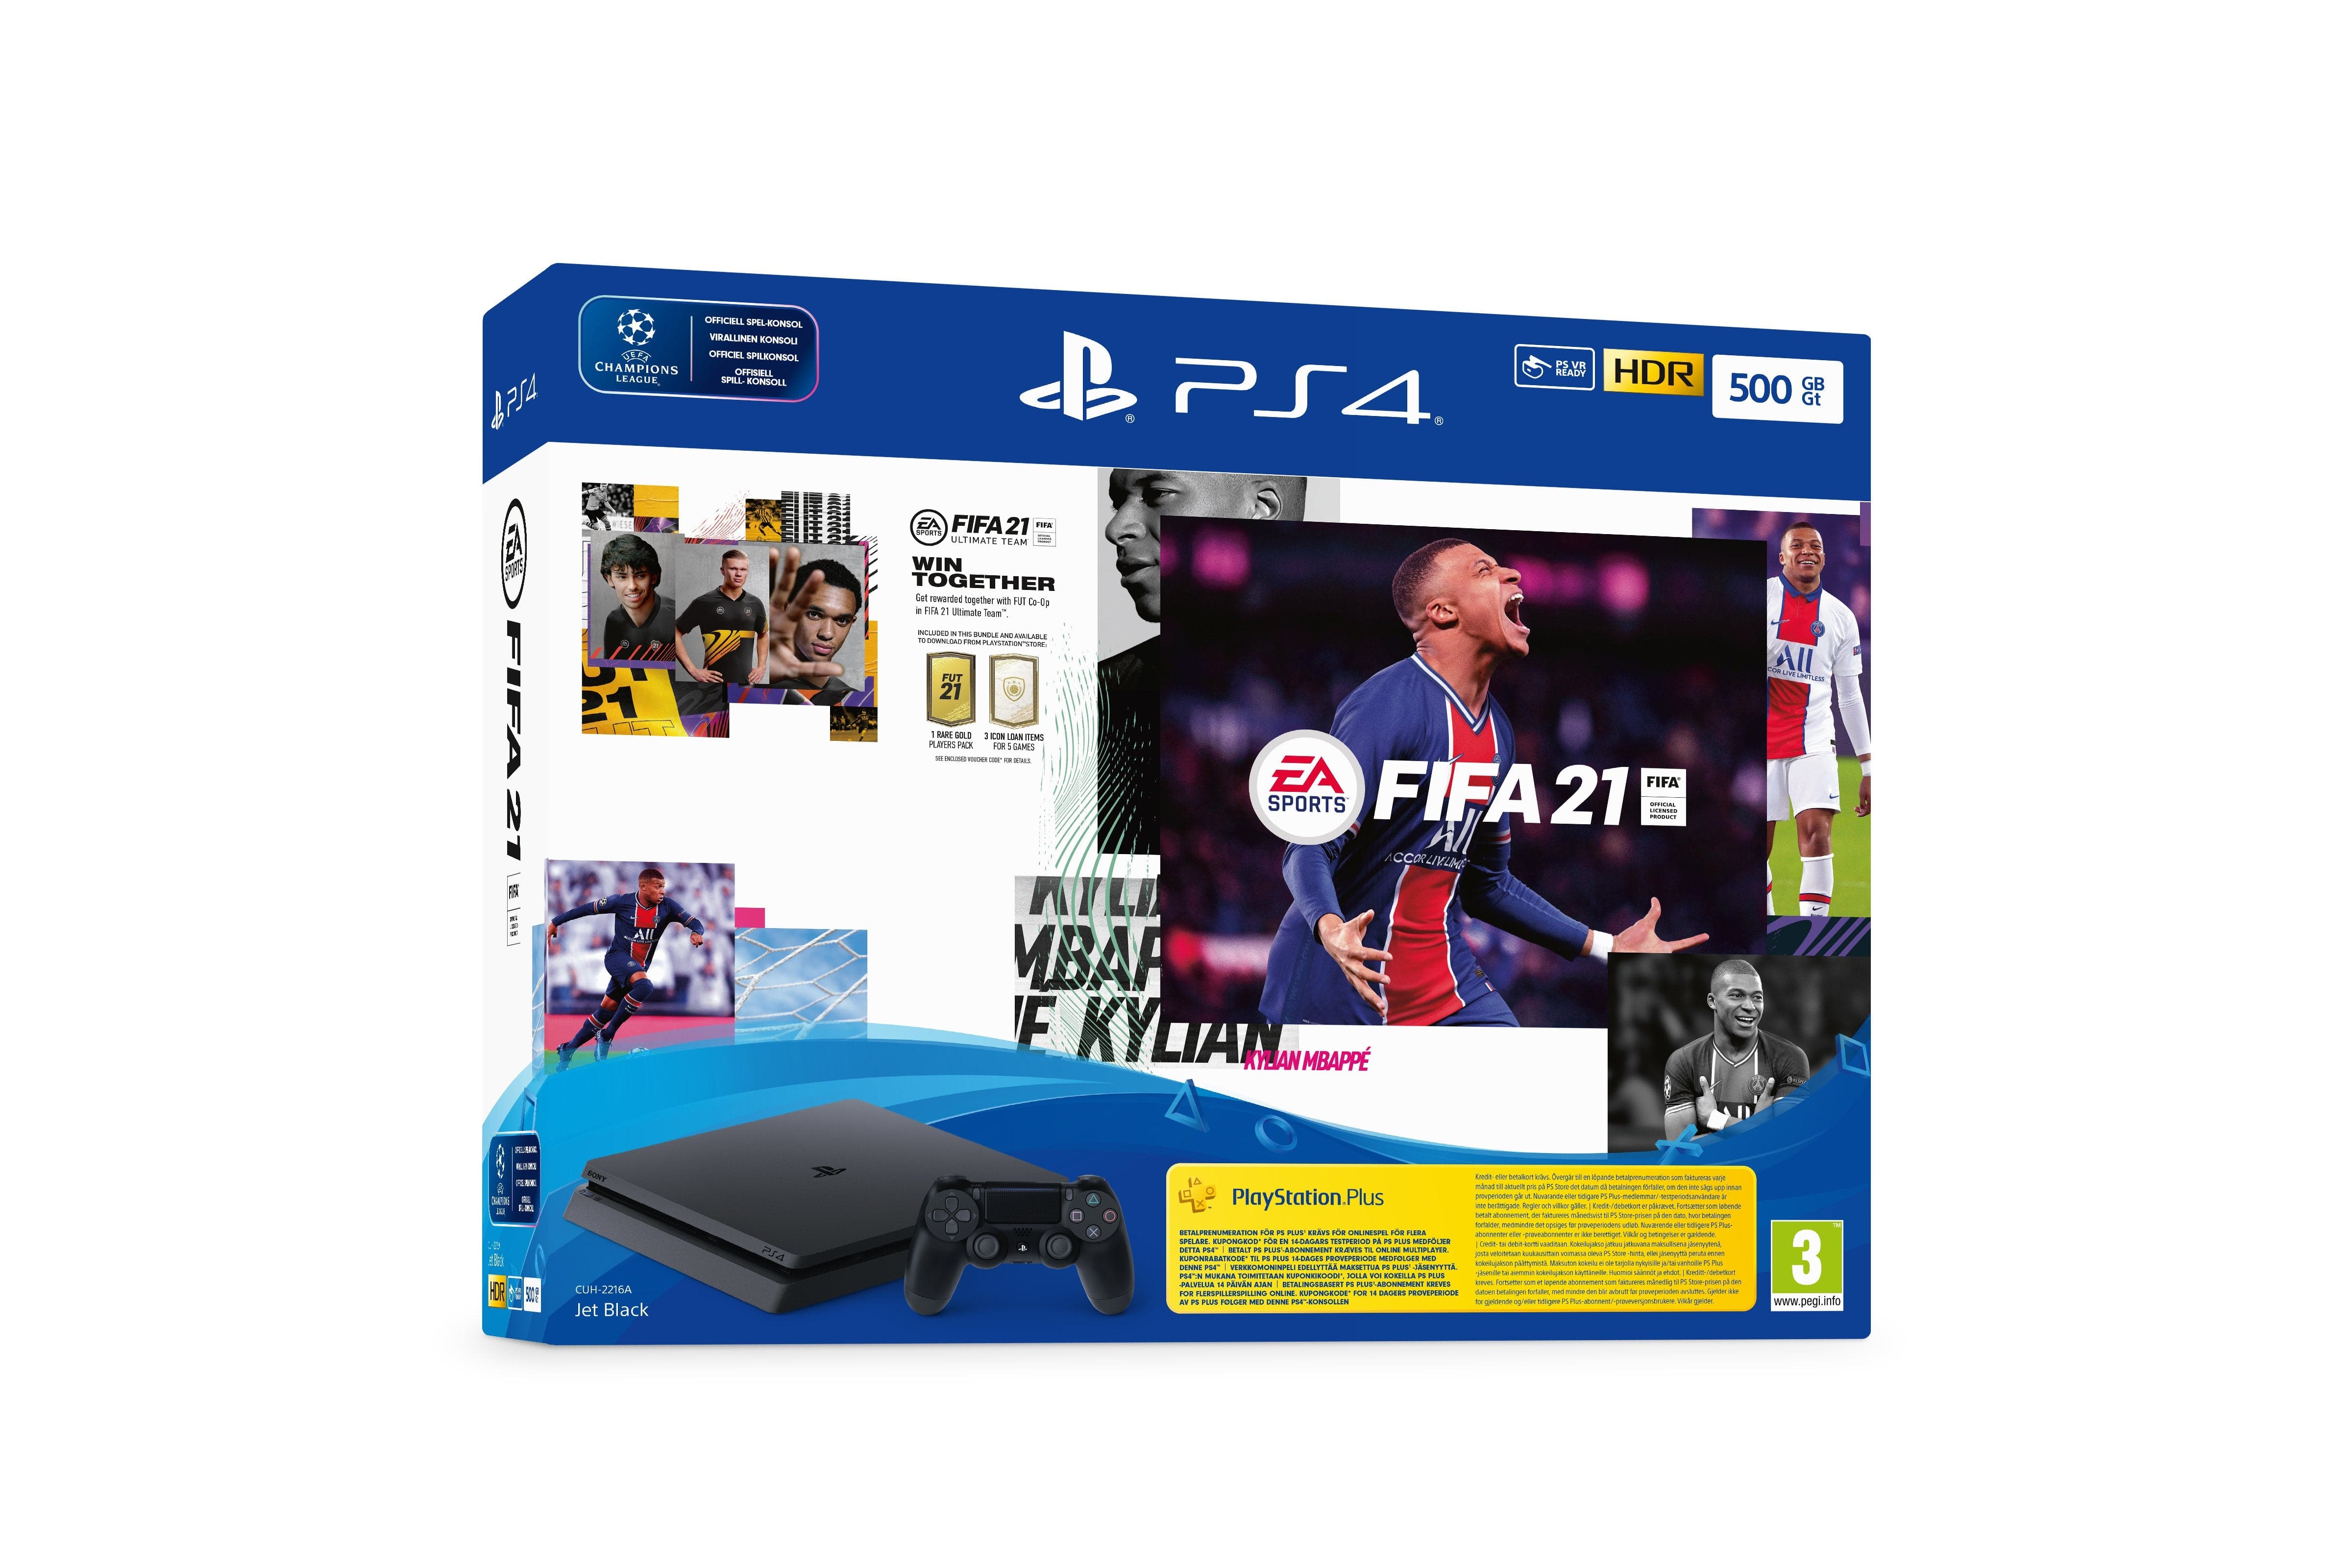 FIFA 23 PlayStation 4 - AA GAMING STORE